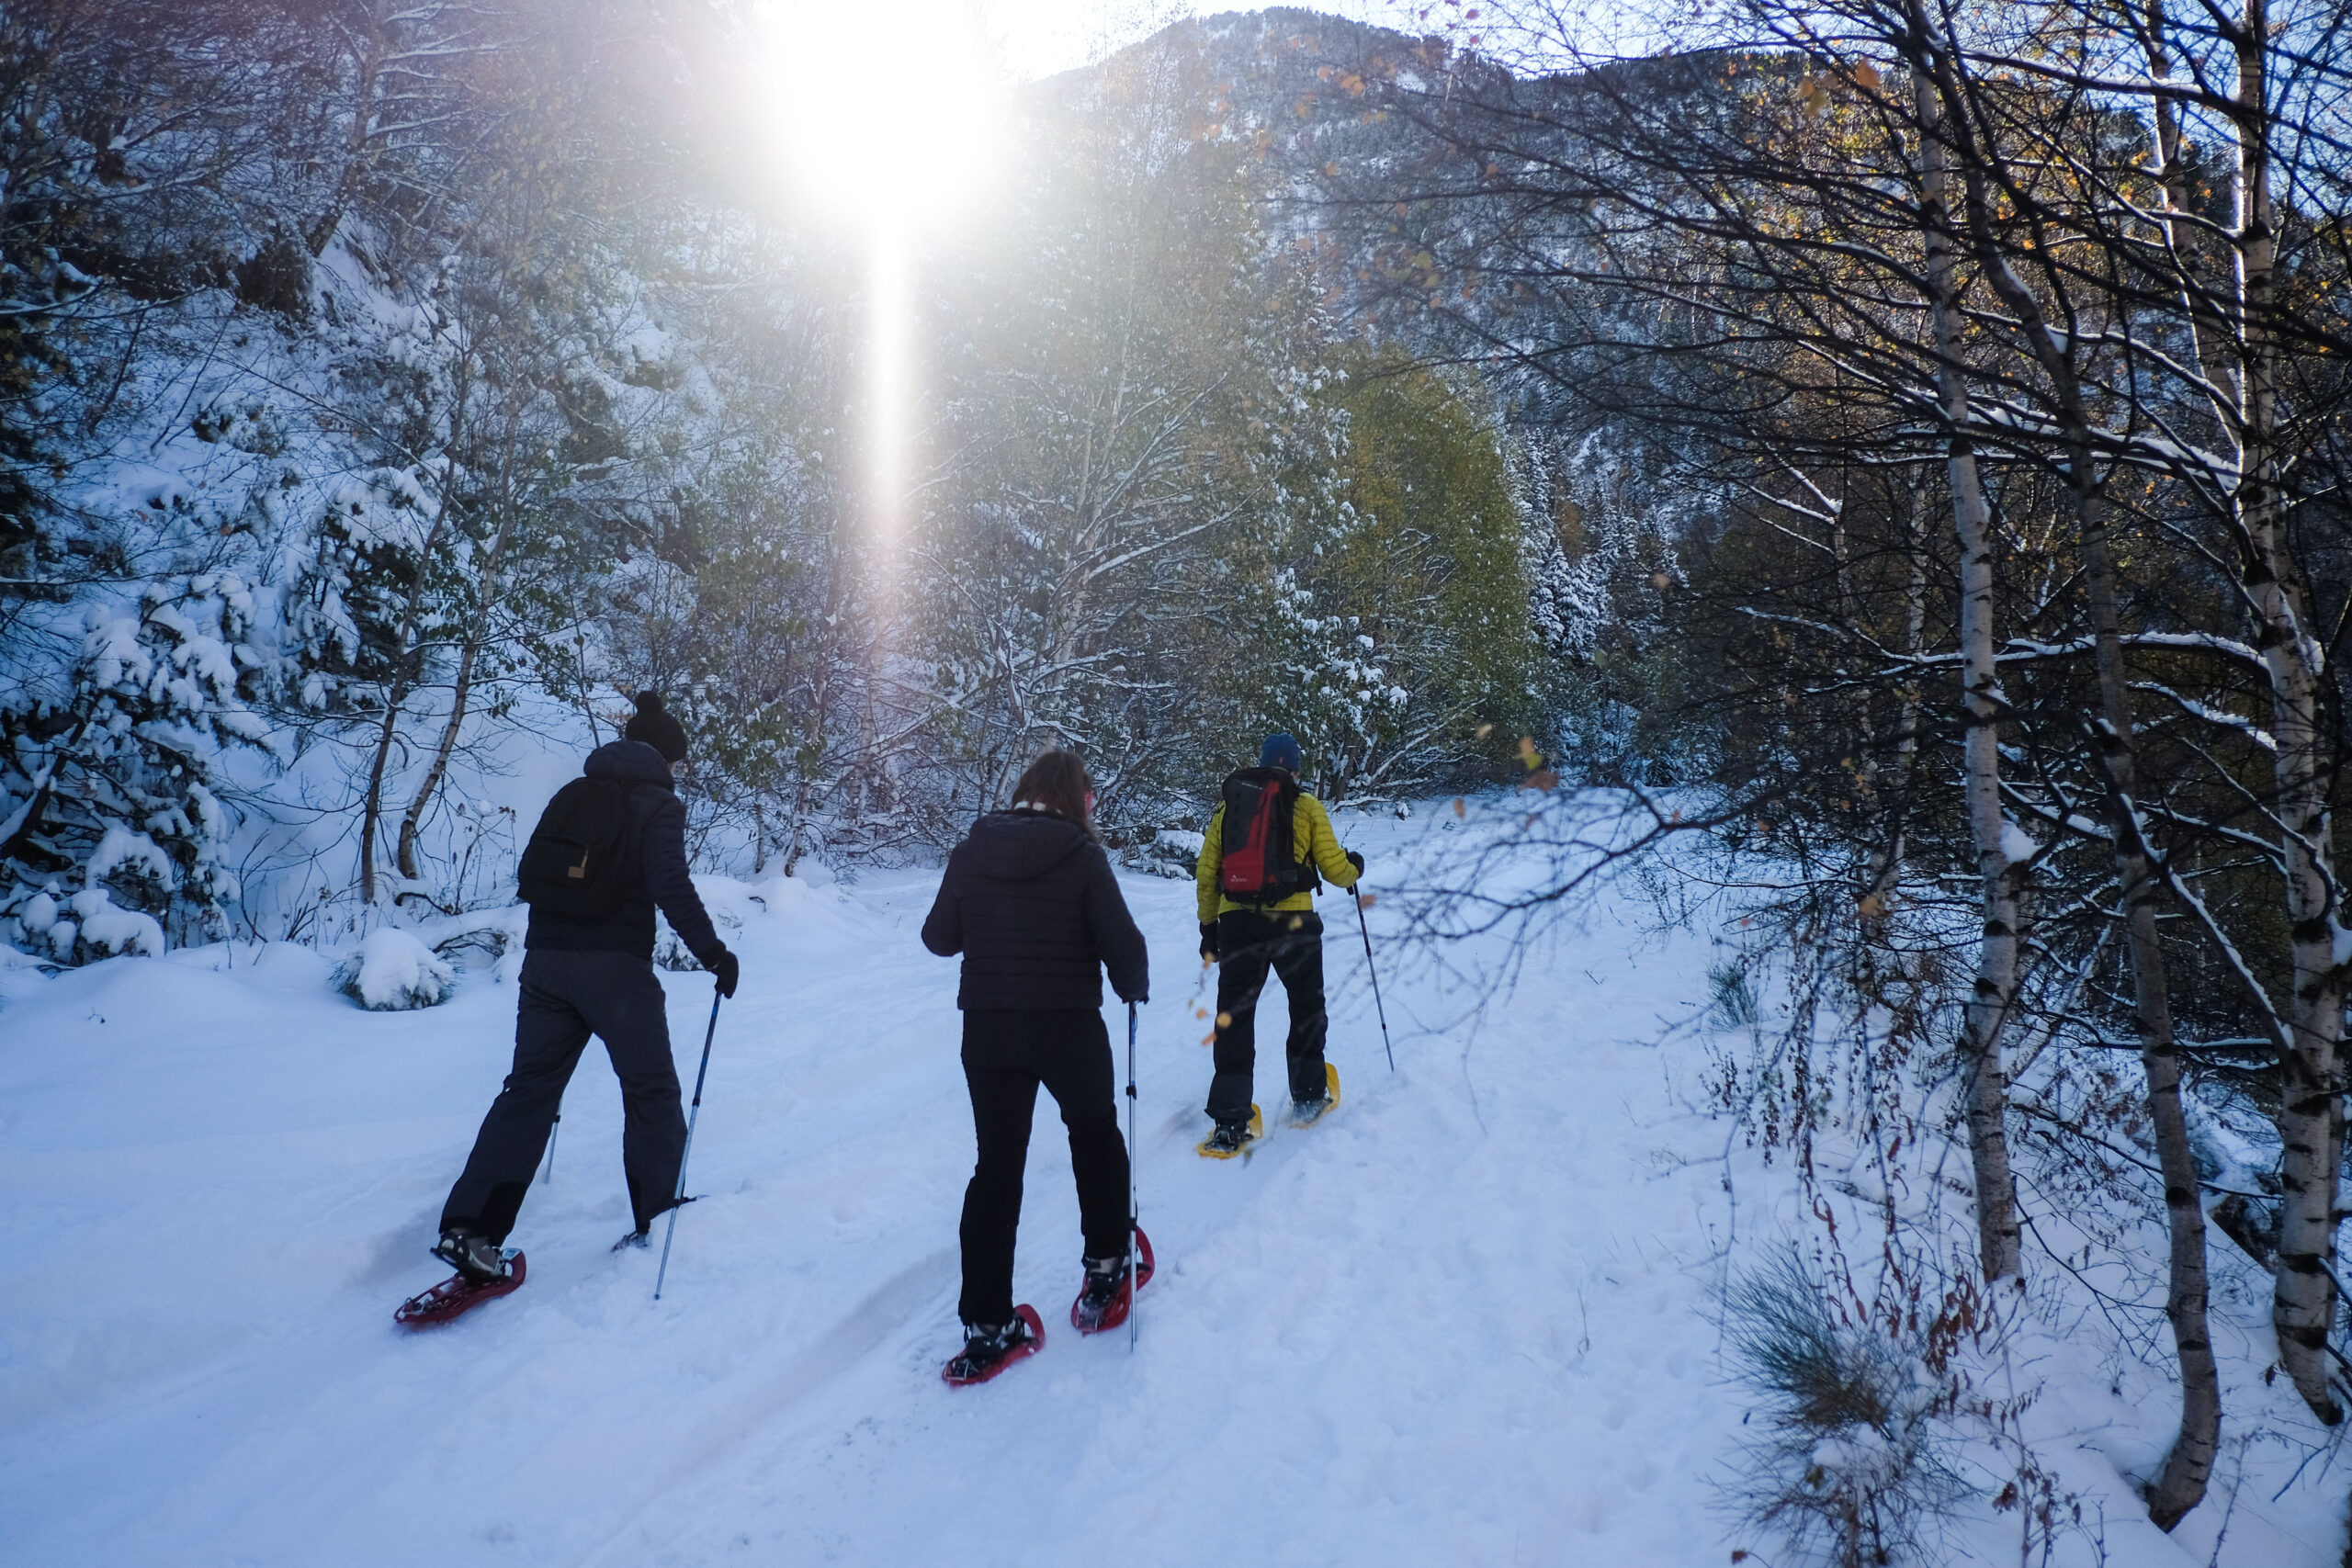 iWE: Agencia Líder de Turismo Activo- Caminata con raquetas para nieve en los Pirineos -El Bosque nativo en invierno. Experiencia en Grupo-Pirineo- - Viajes en familia-Bosque Andorrano-Atardecer